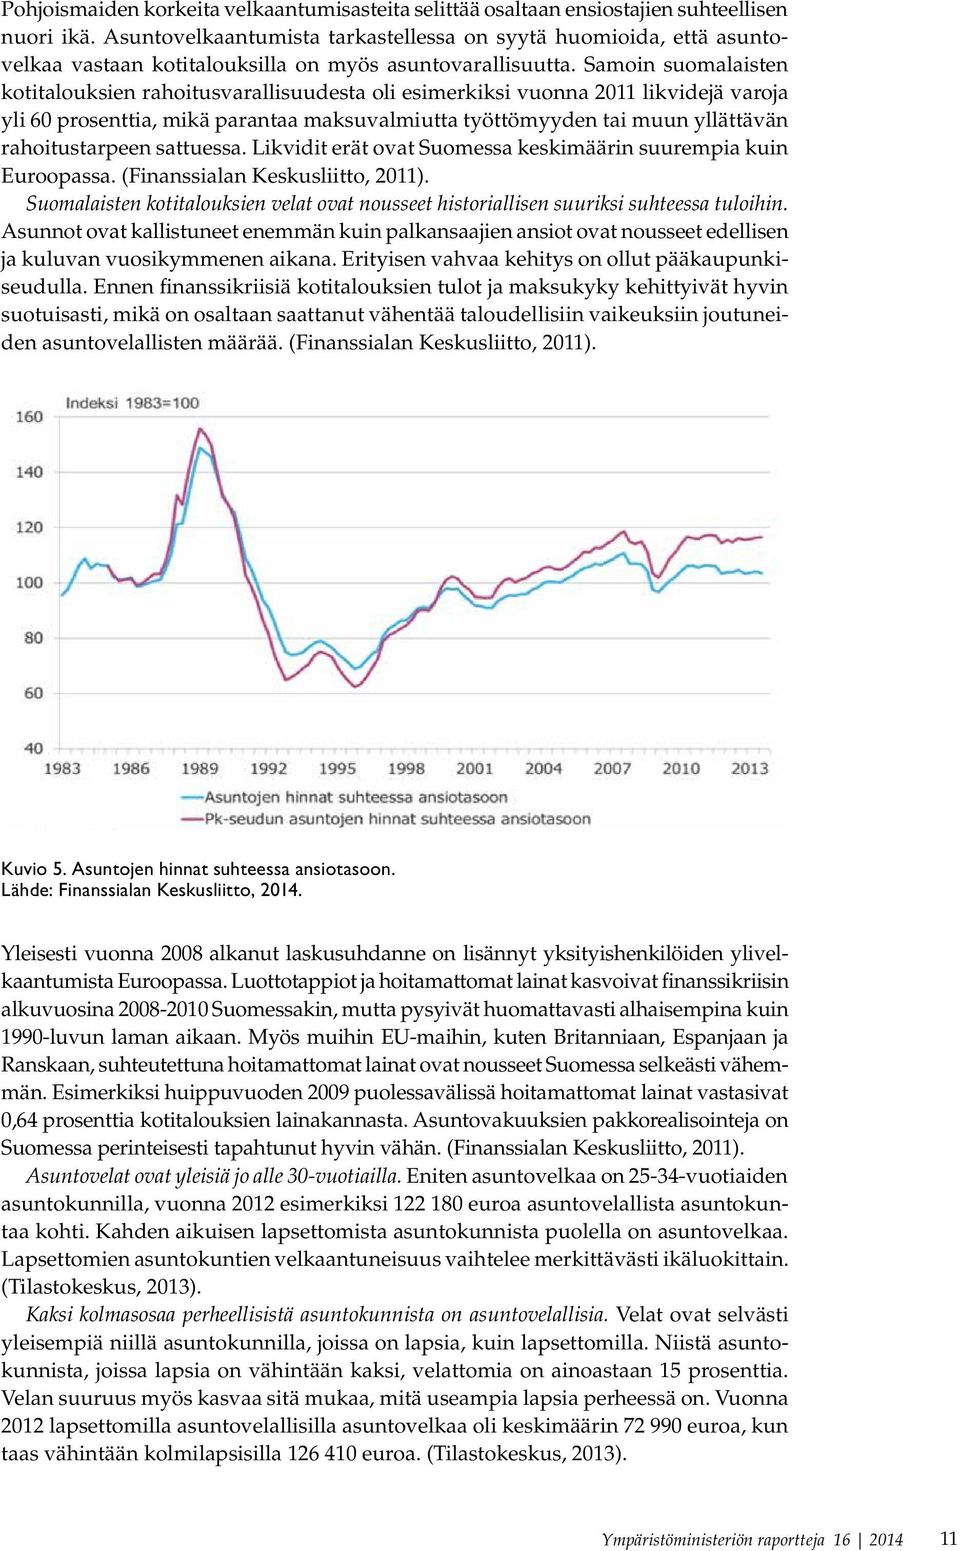 Samoin suomalaisten kotitalouksien rahoitusvarallisuudesta oli esimerkiksi vuonna 2011 likvidejä varoja yli 60 prosenttia, mikä parantaa maksuvalmiutta työttömyyden tai muun yllättävän